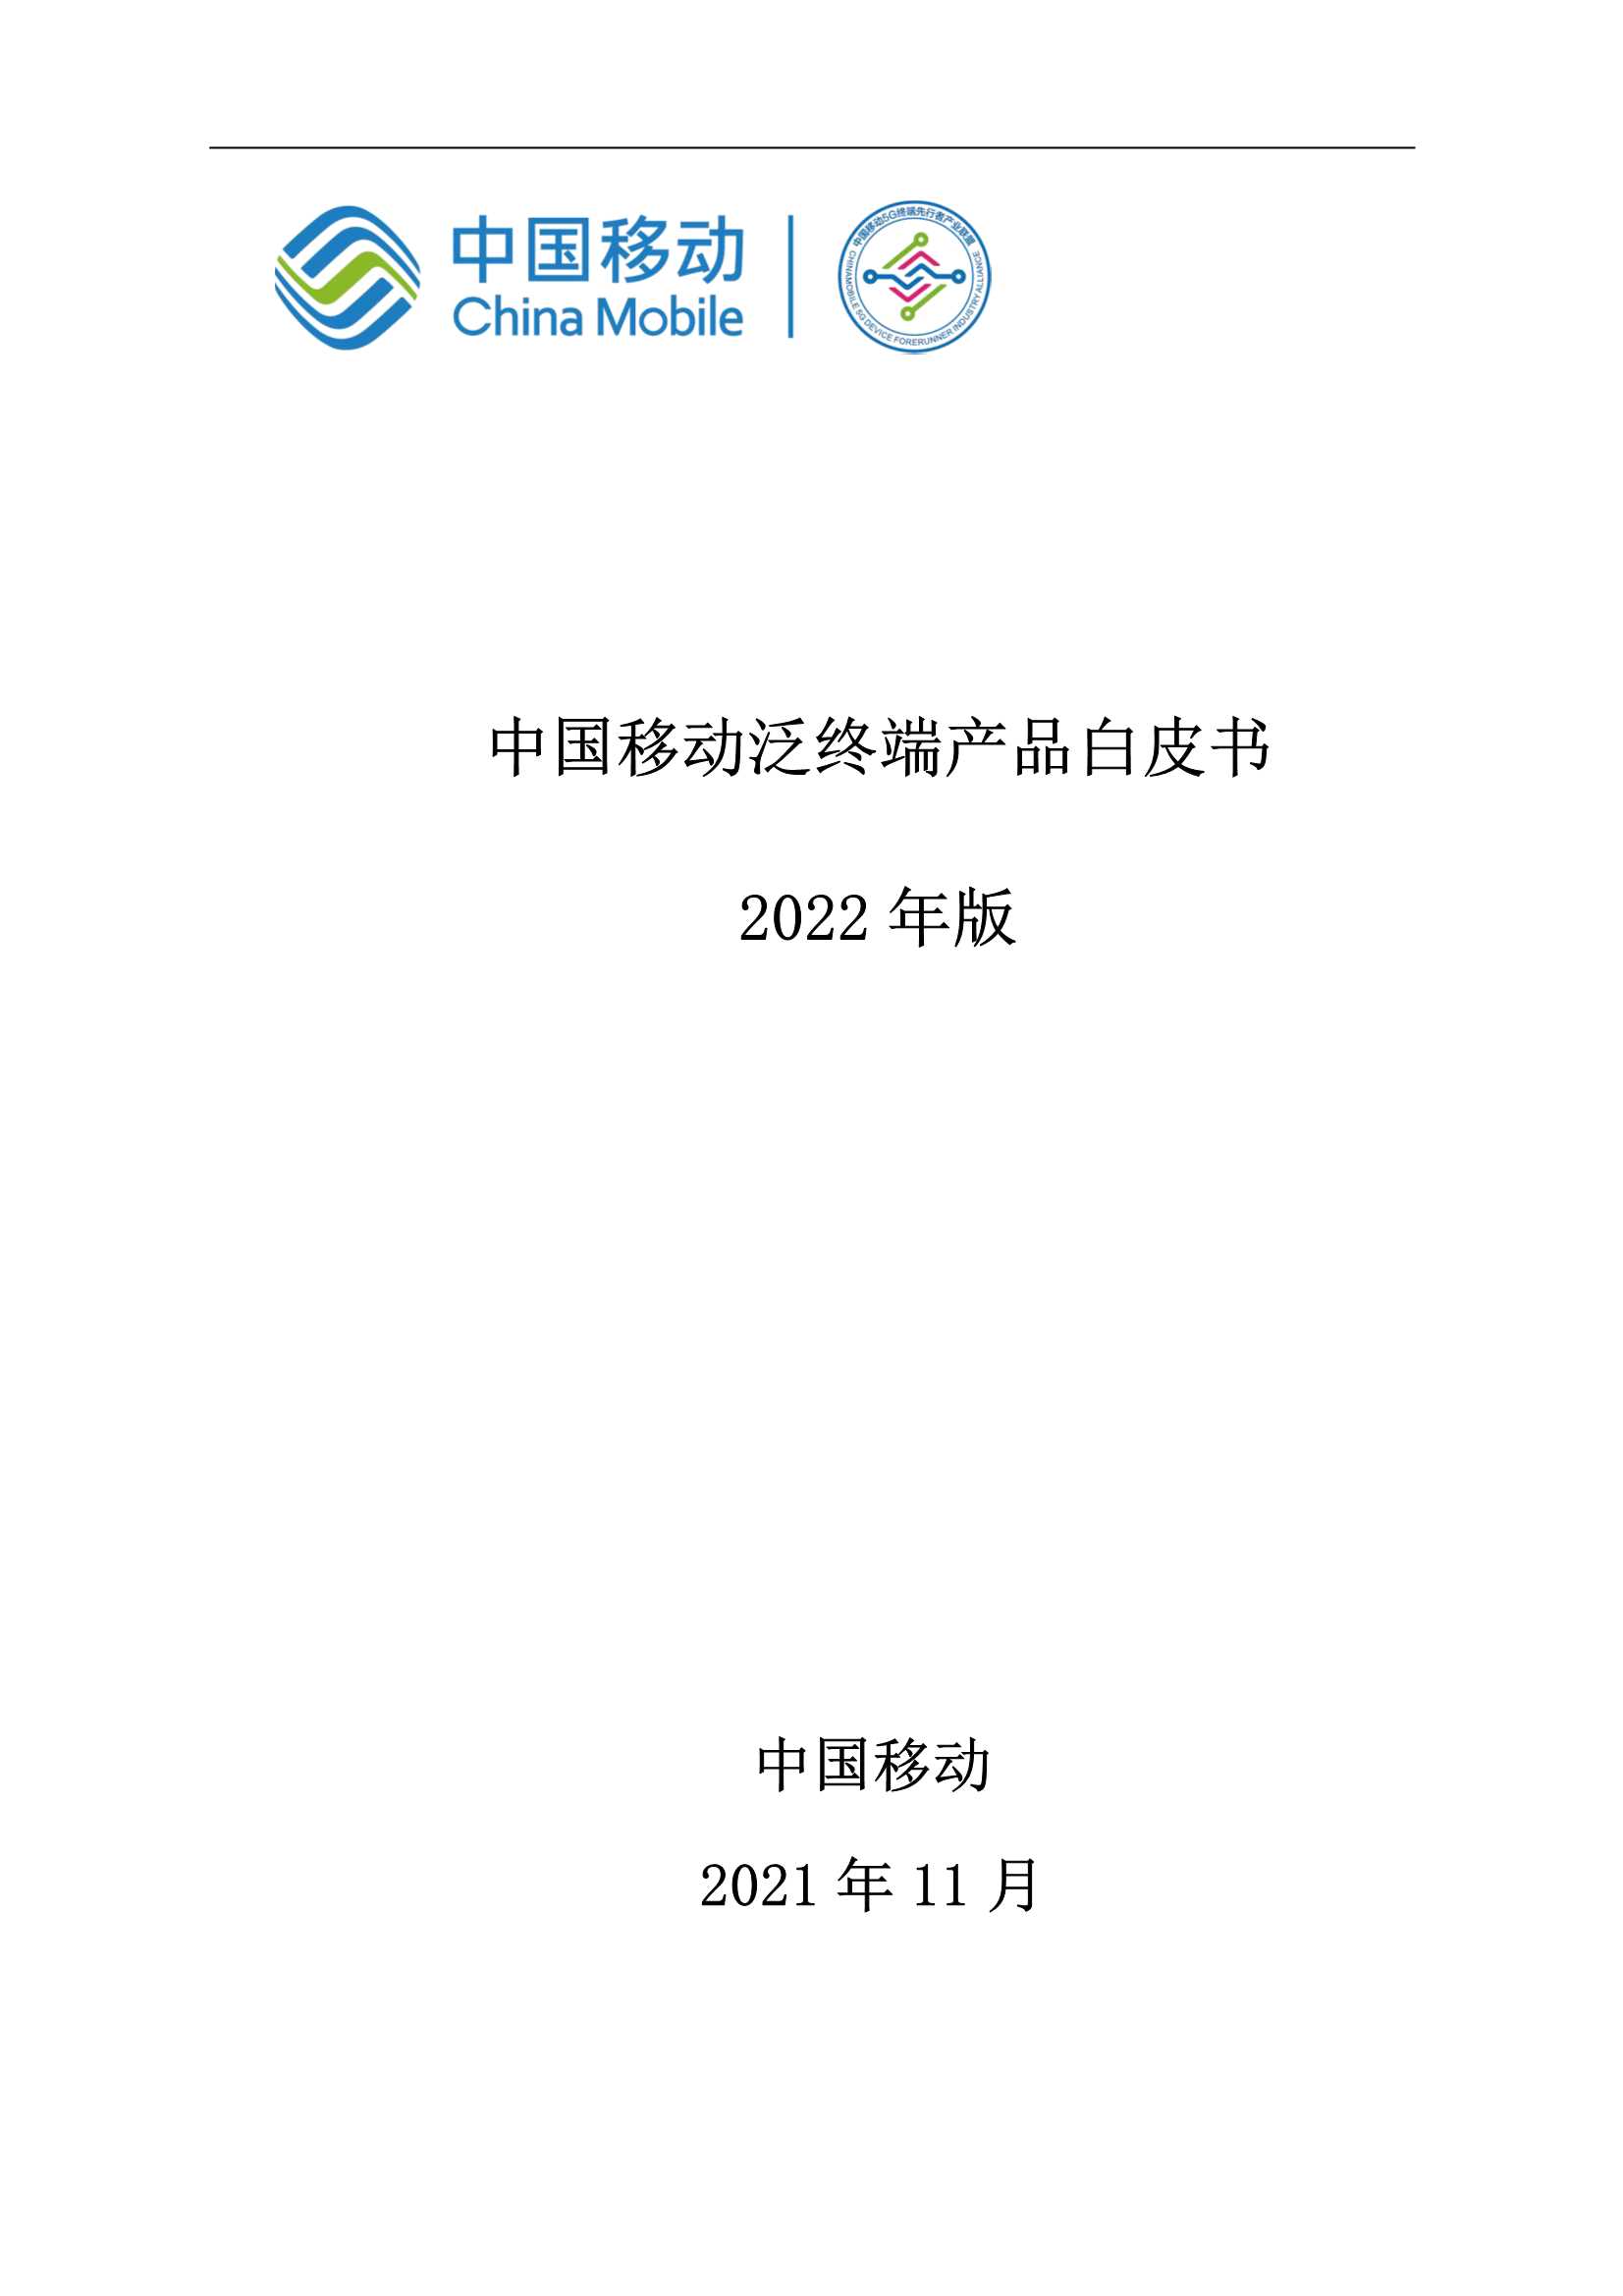 中国移动泛终端产品白皮书(2022年版)-2021.12-148页